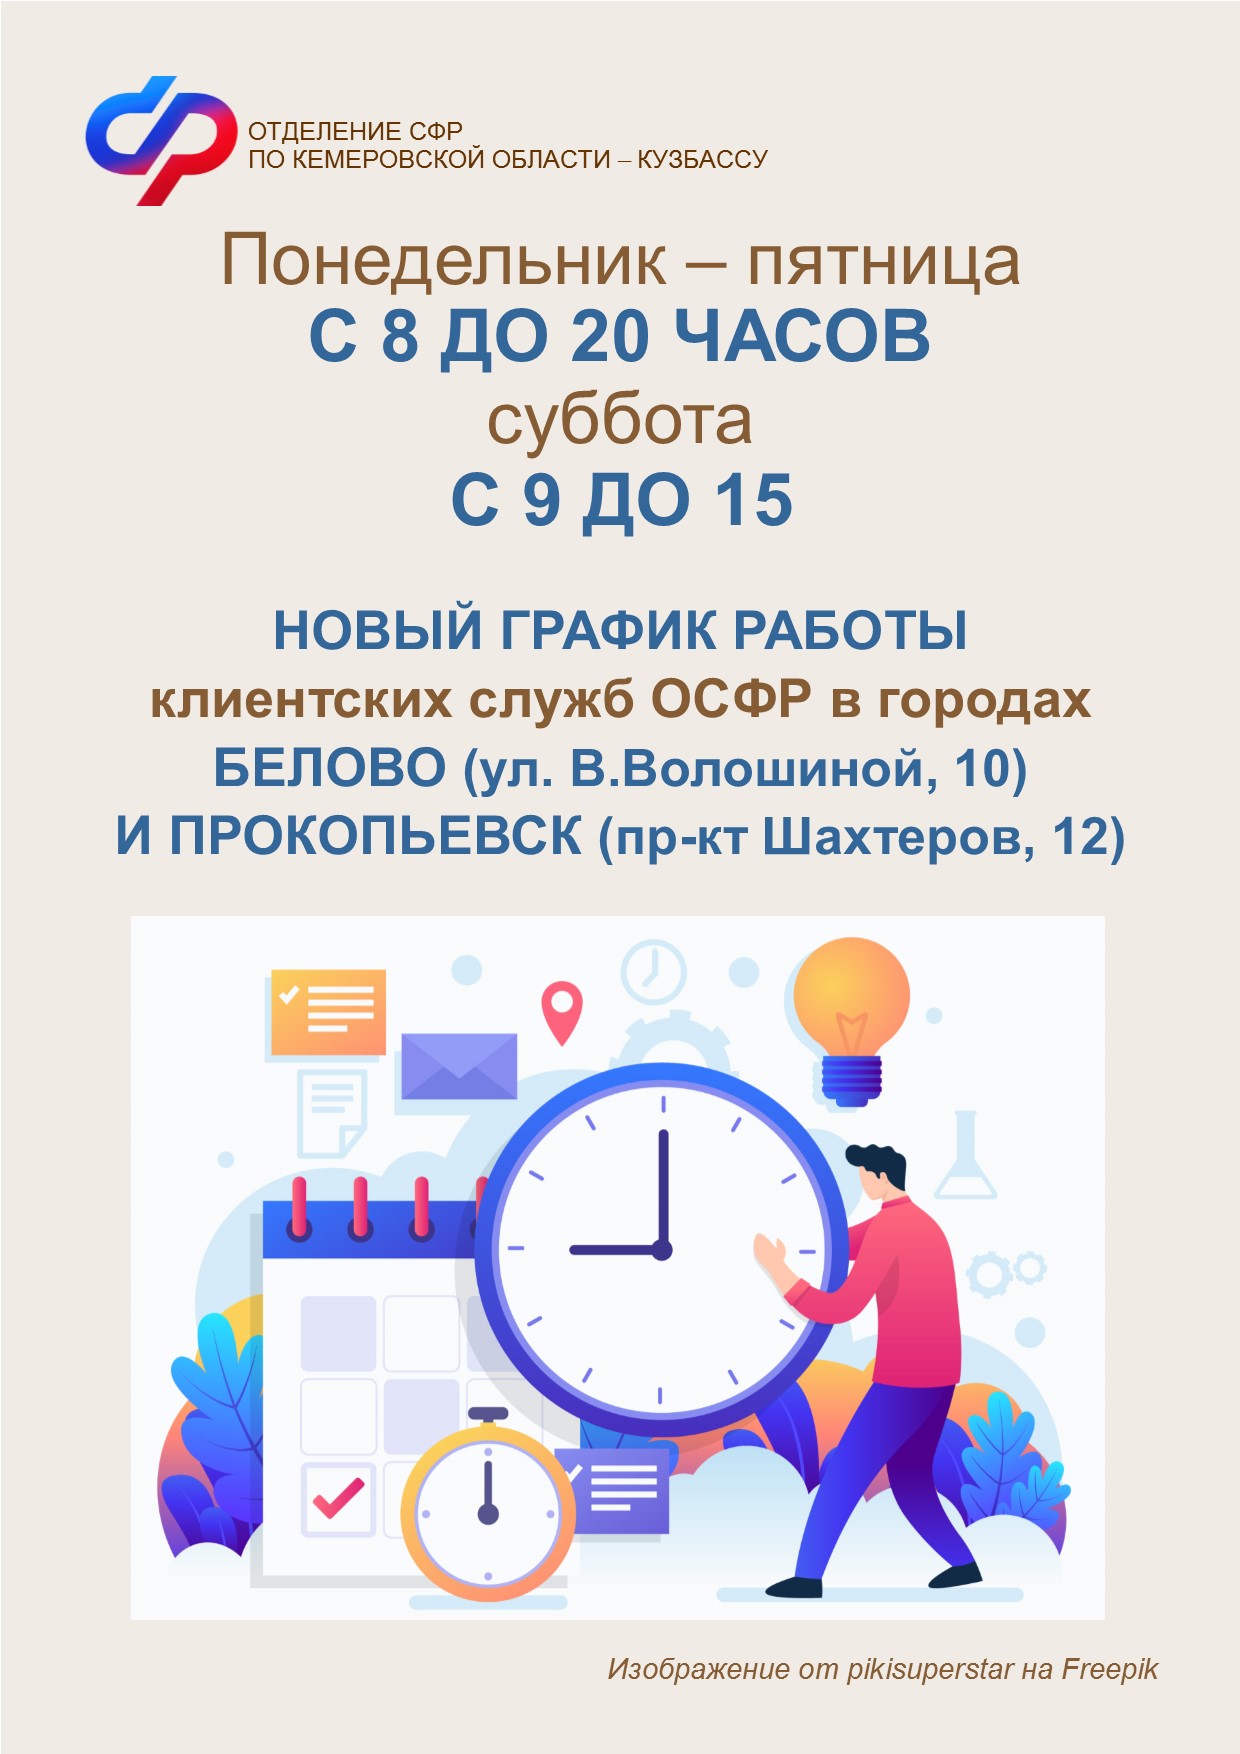 Жители Белова и Прокопьевска имеют возможность обратиться за консультацией в клиентские службы ОСФР в вечерние часы и в субботу